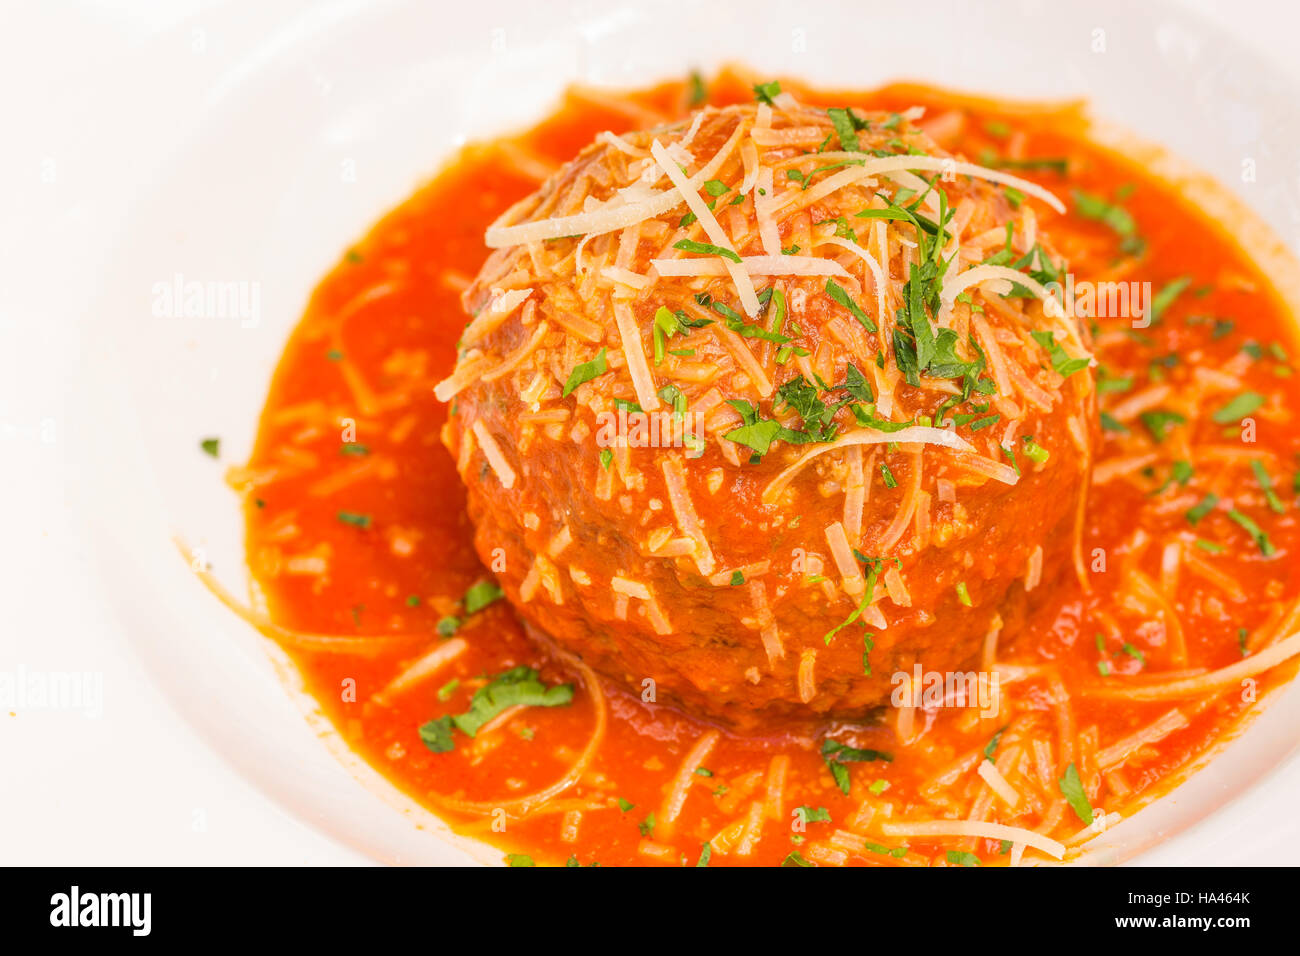 Un très grand Italian meatball baigné dans de riches pomodoro, garni de persil et de parmesan Banque D'Images